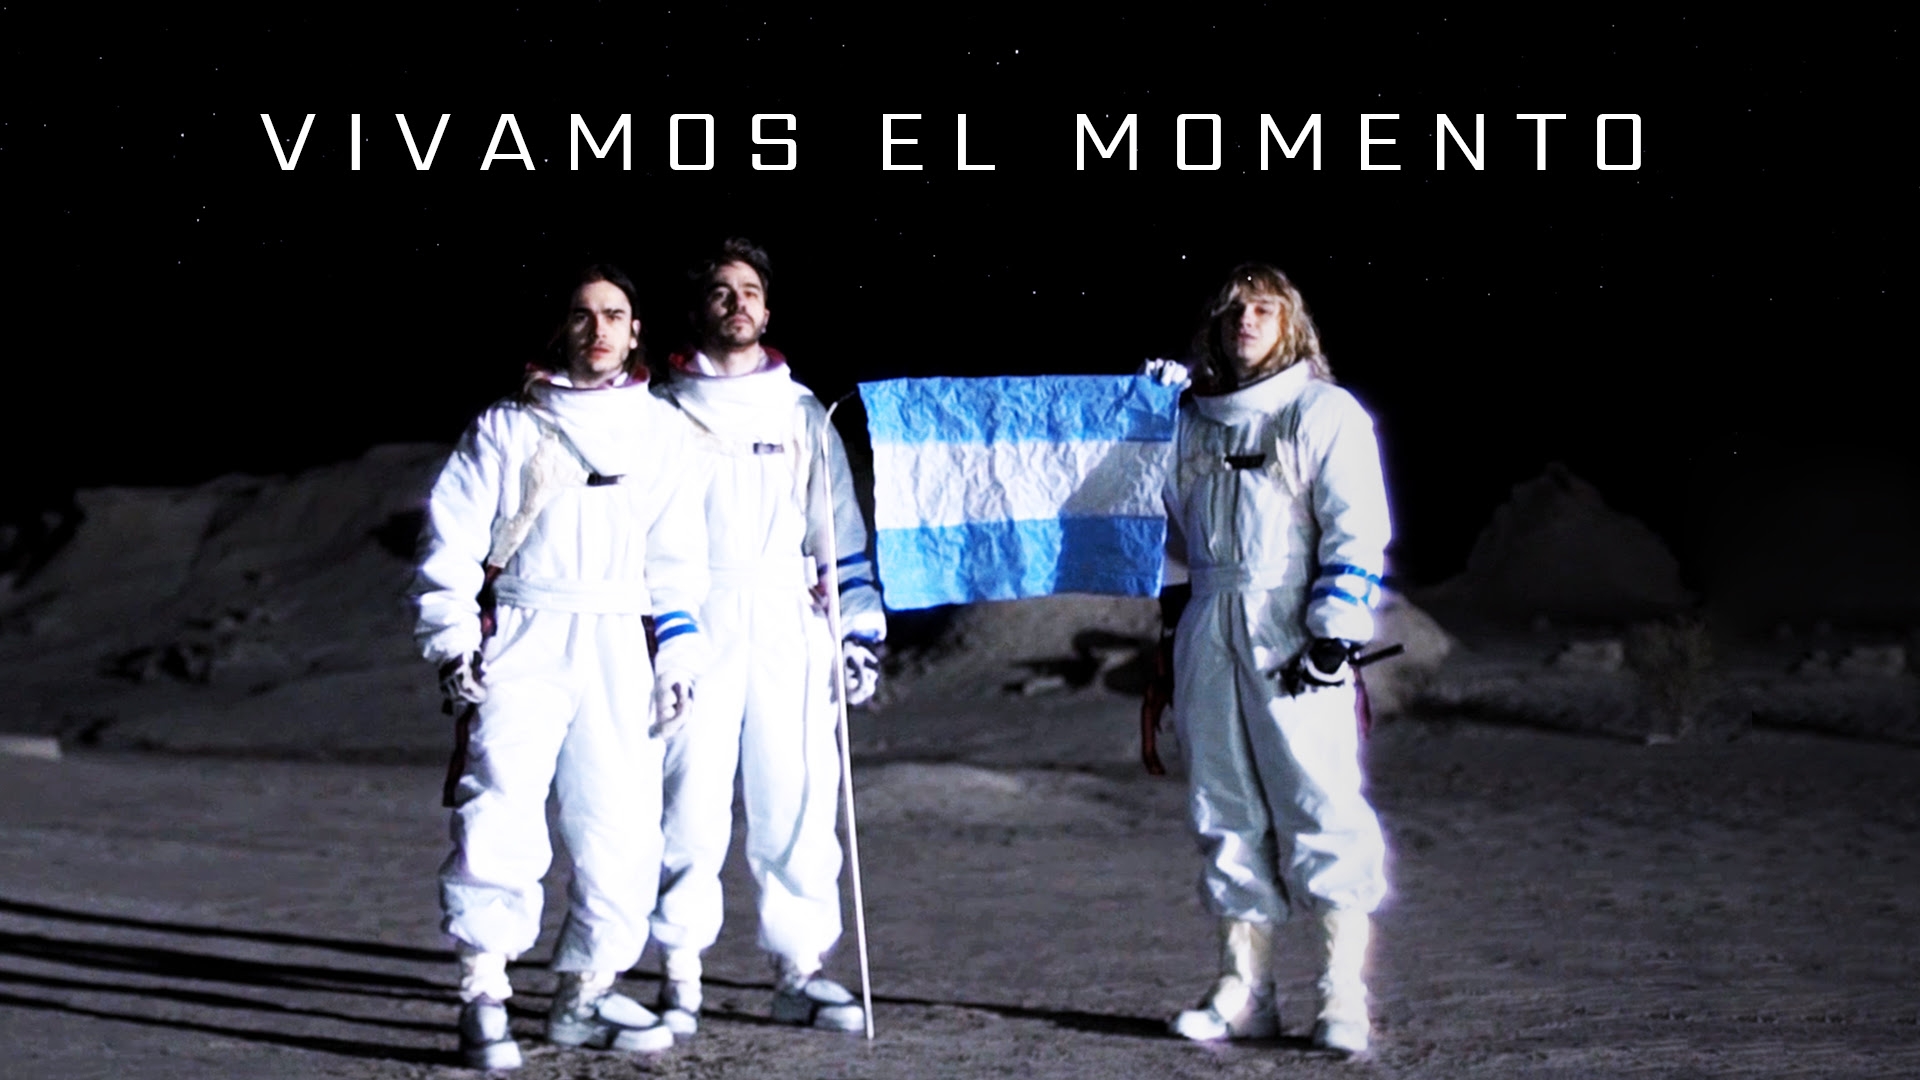 AIRBAG presenta "Vivamos el momento", primer single y video de su nuevo álbum.